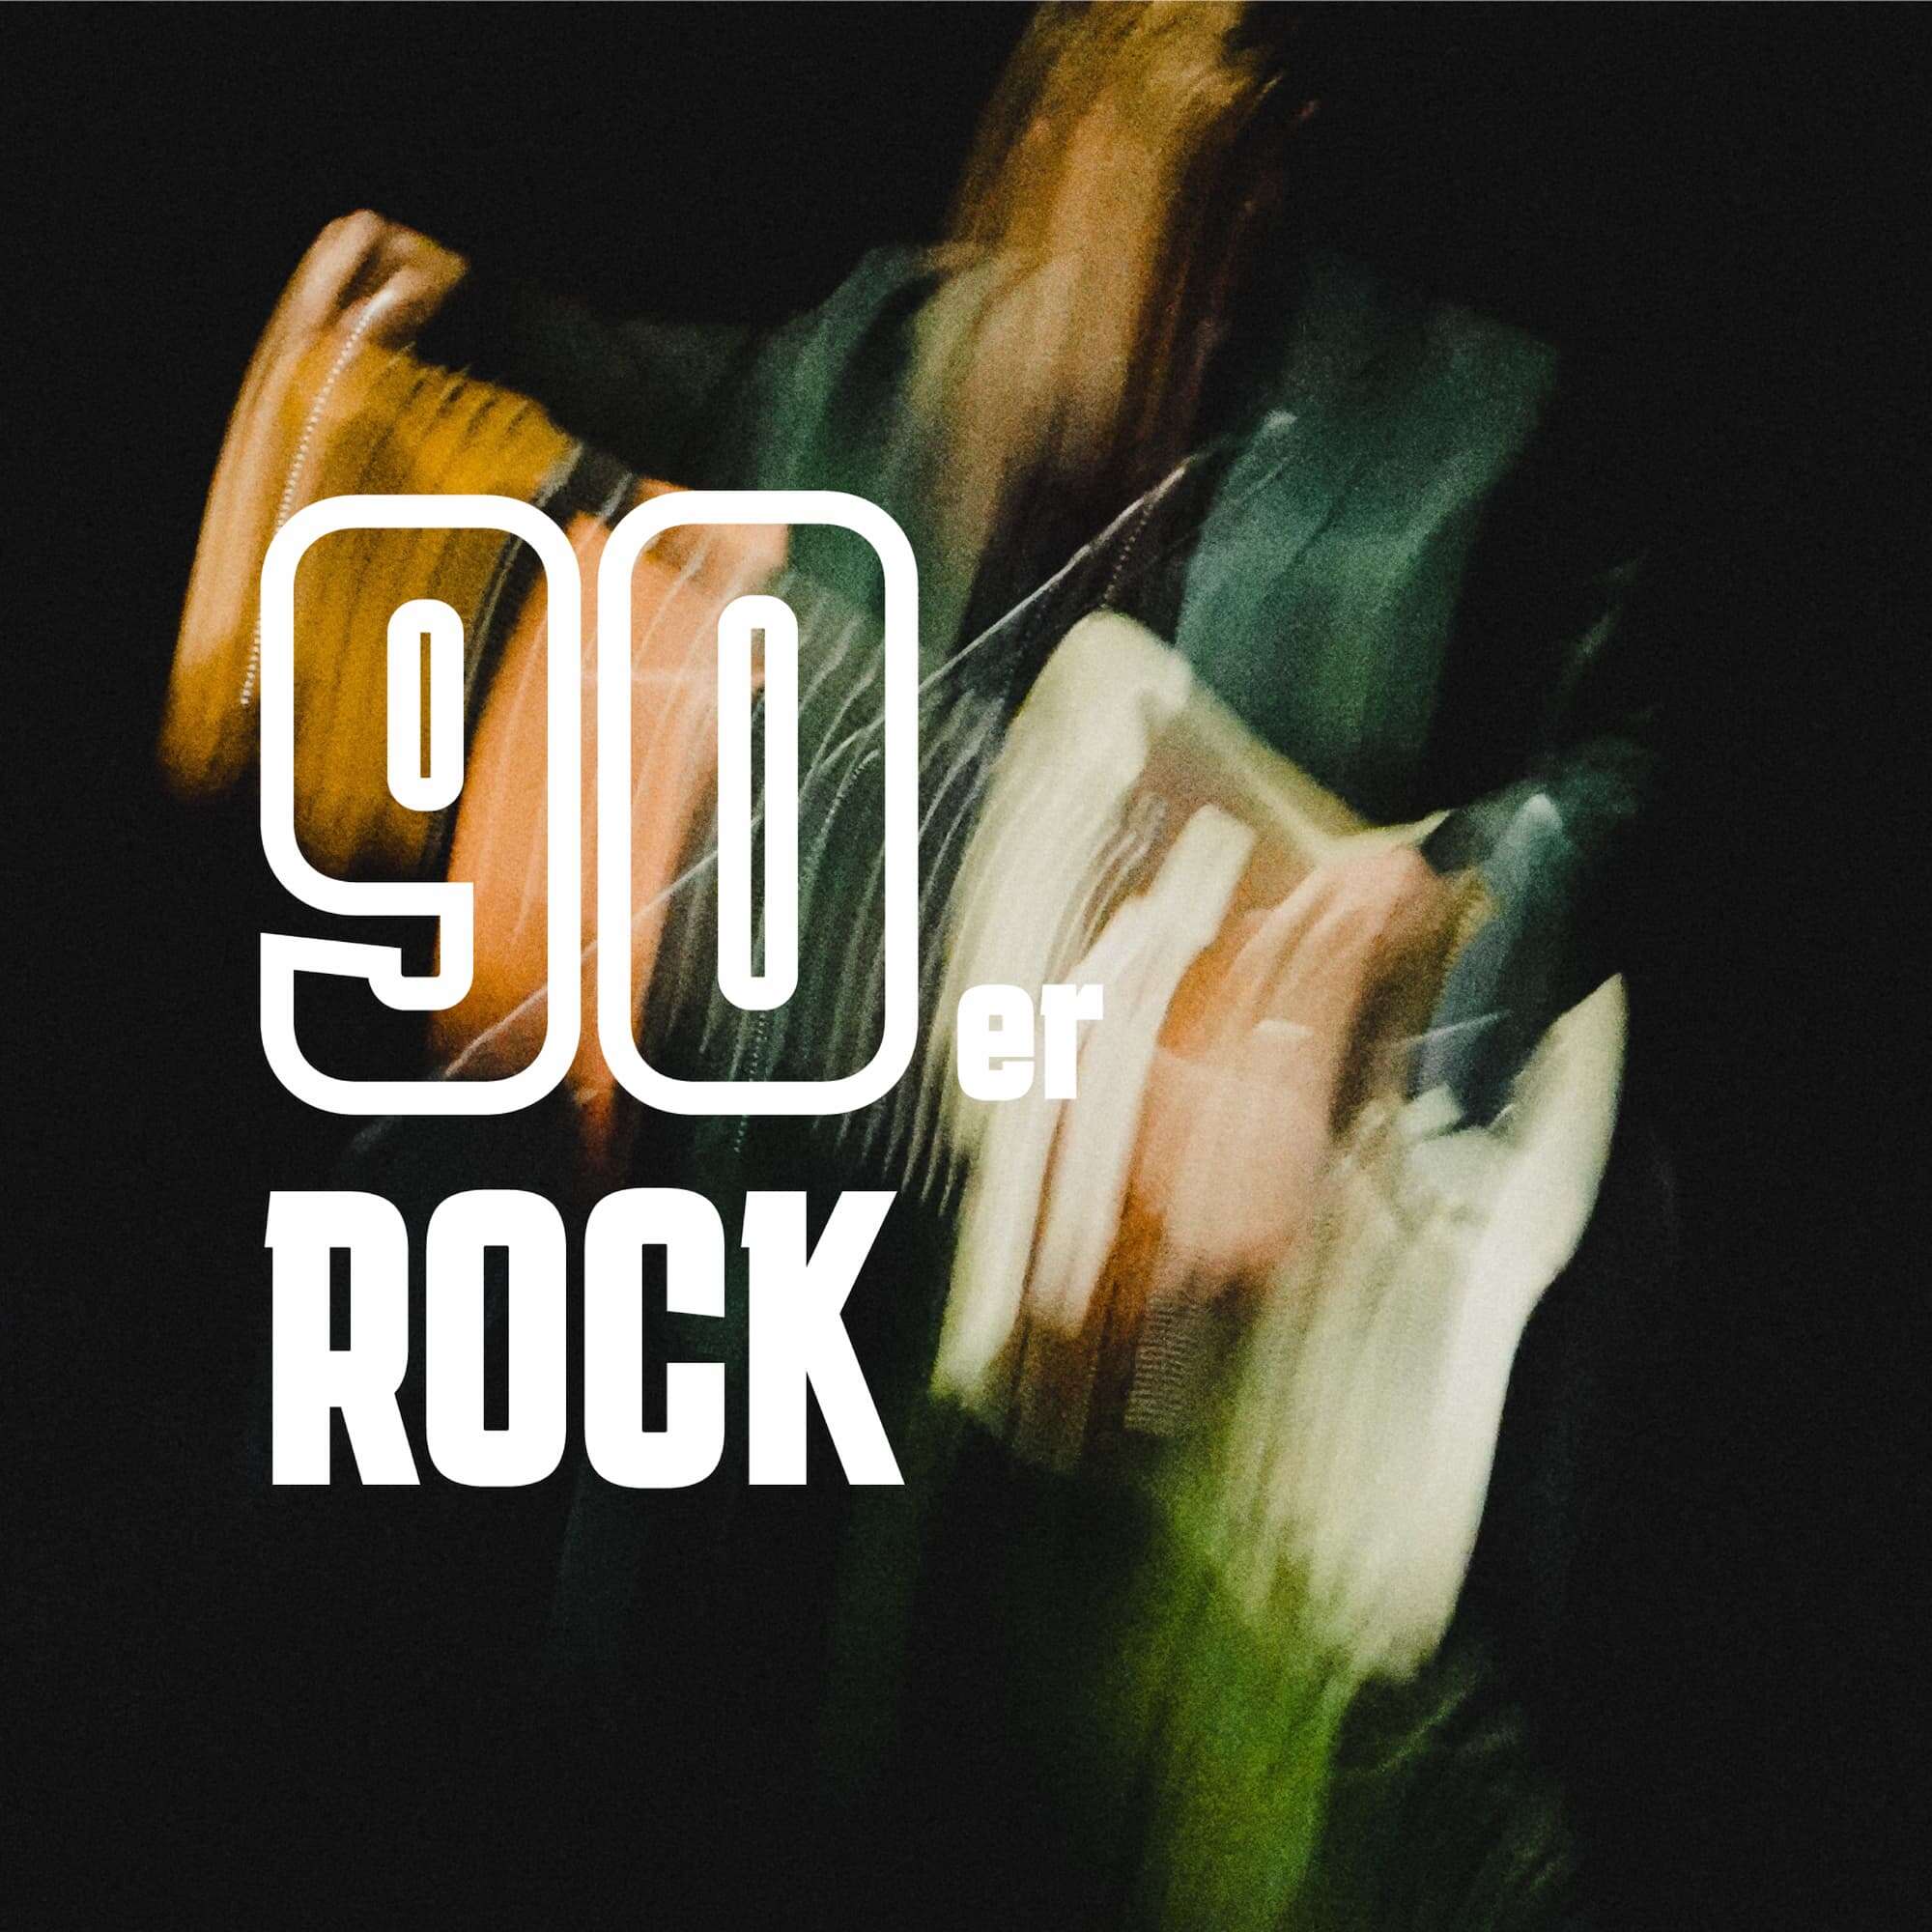 90er Rock